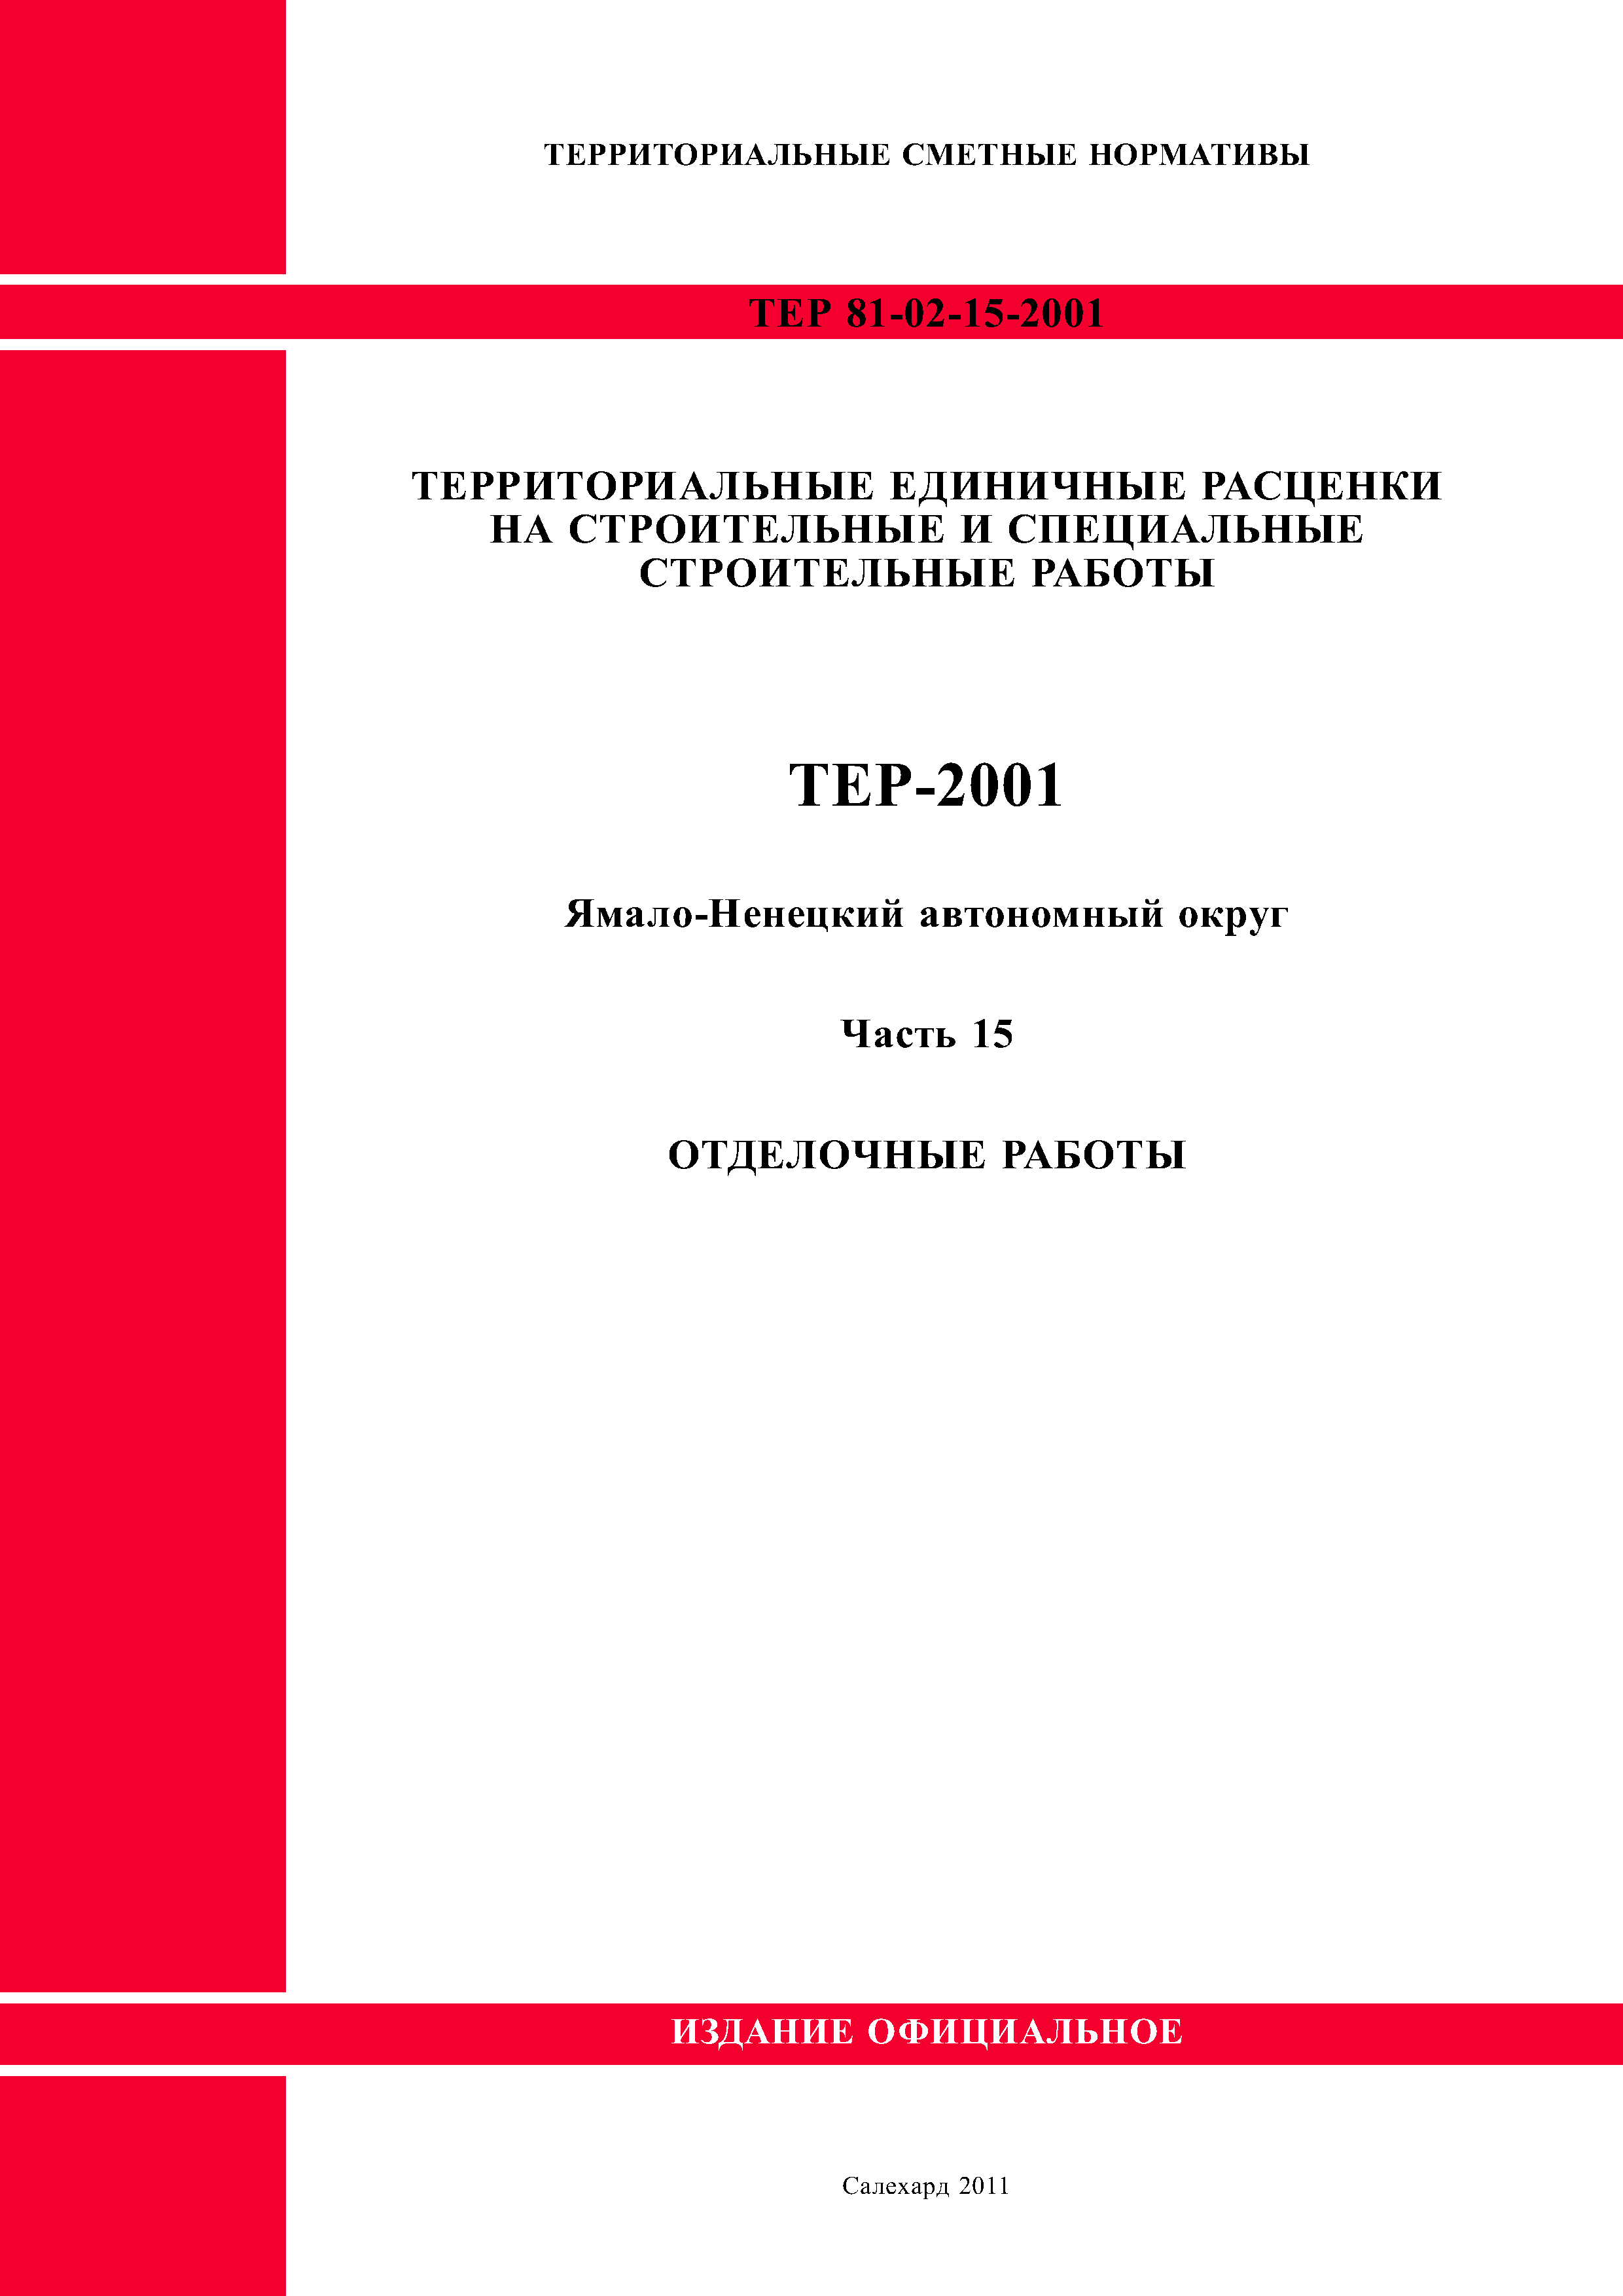 ТЕР Ямало-Ненецкий автономный округ 15-2001